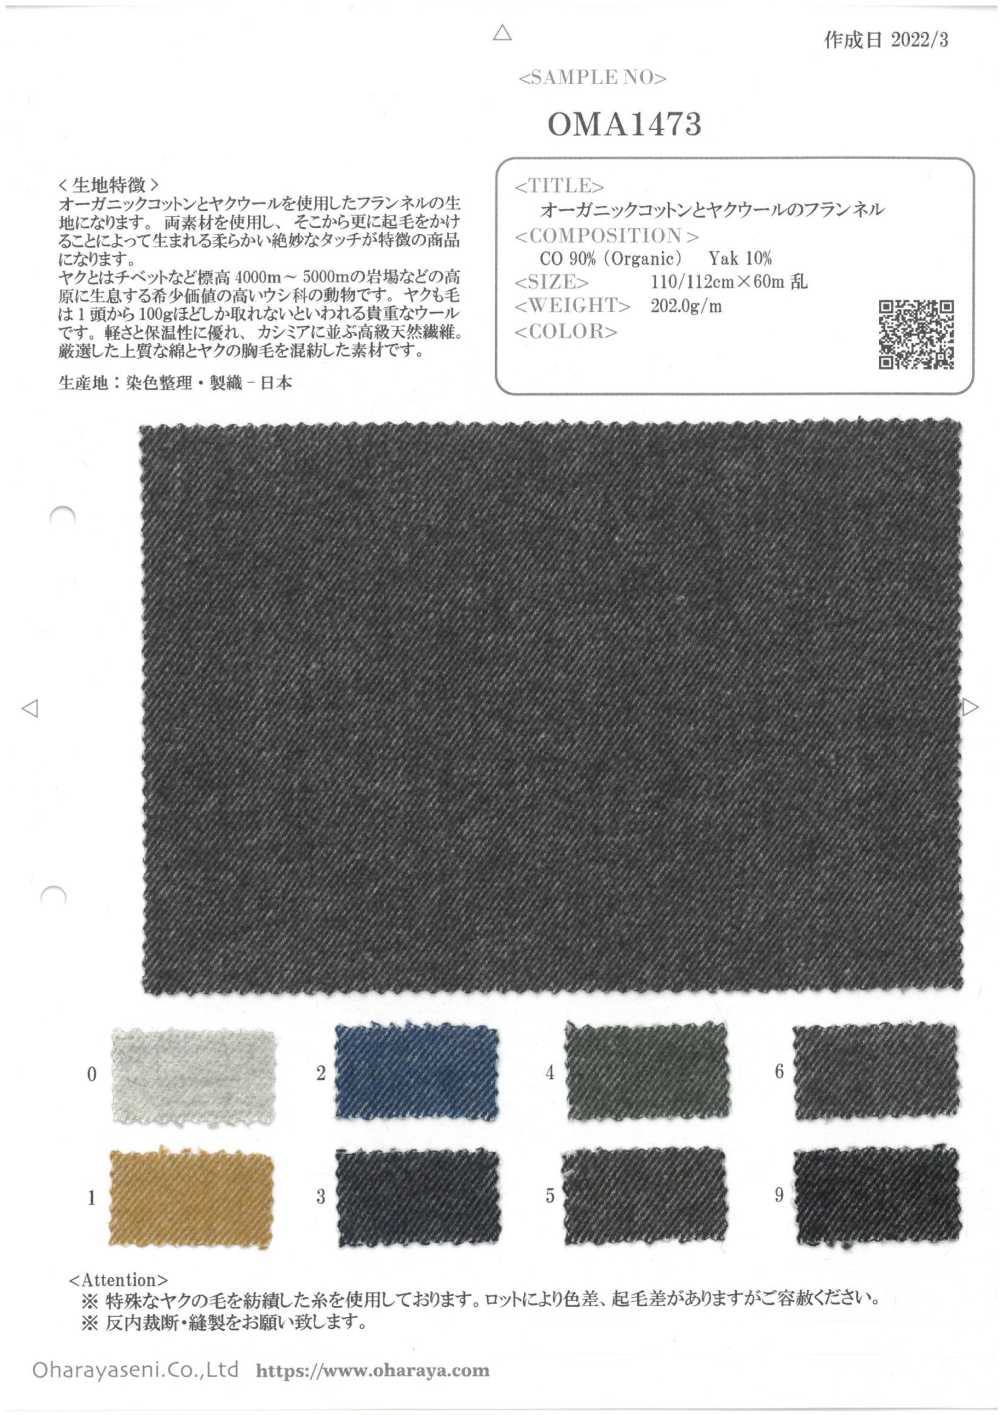 OMA1473 Flanela De Algodão Orgânico E Lã De Iaque[Têxtil / Tecido] Oharayaseni